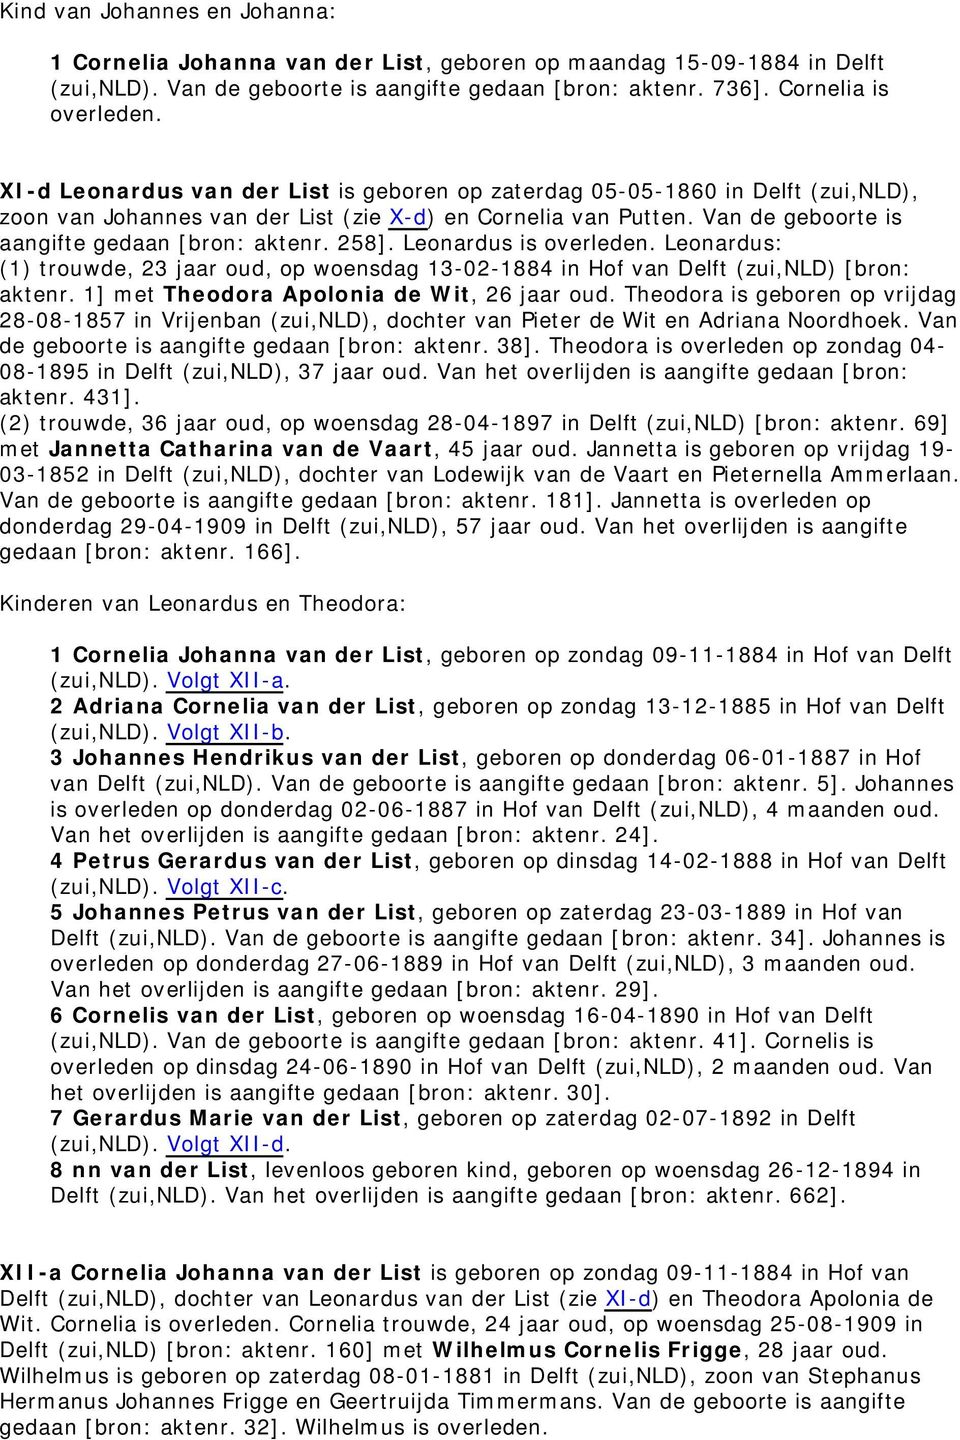 Van de geboorte is aangifte gedaan [bron: aktenr. 258]. Leonardus is Leonardus: (1) trouwde, 23 jaar oud, op woensdag 13-02-1884 in Hof van Delft (zui,nld) [bron: aktenr.